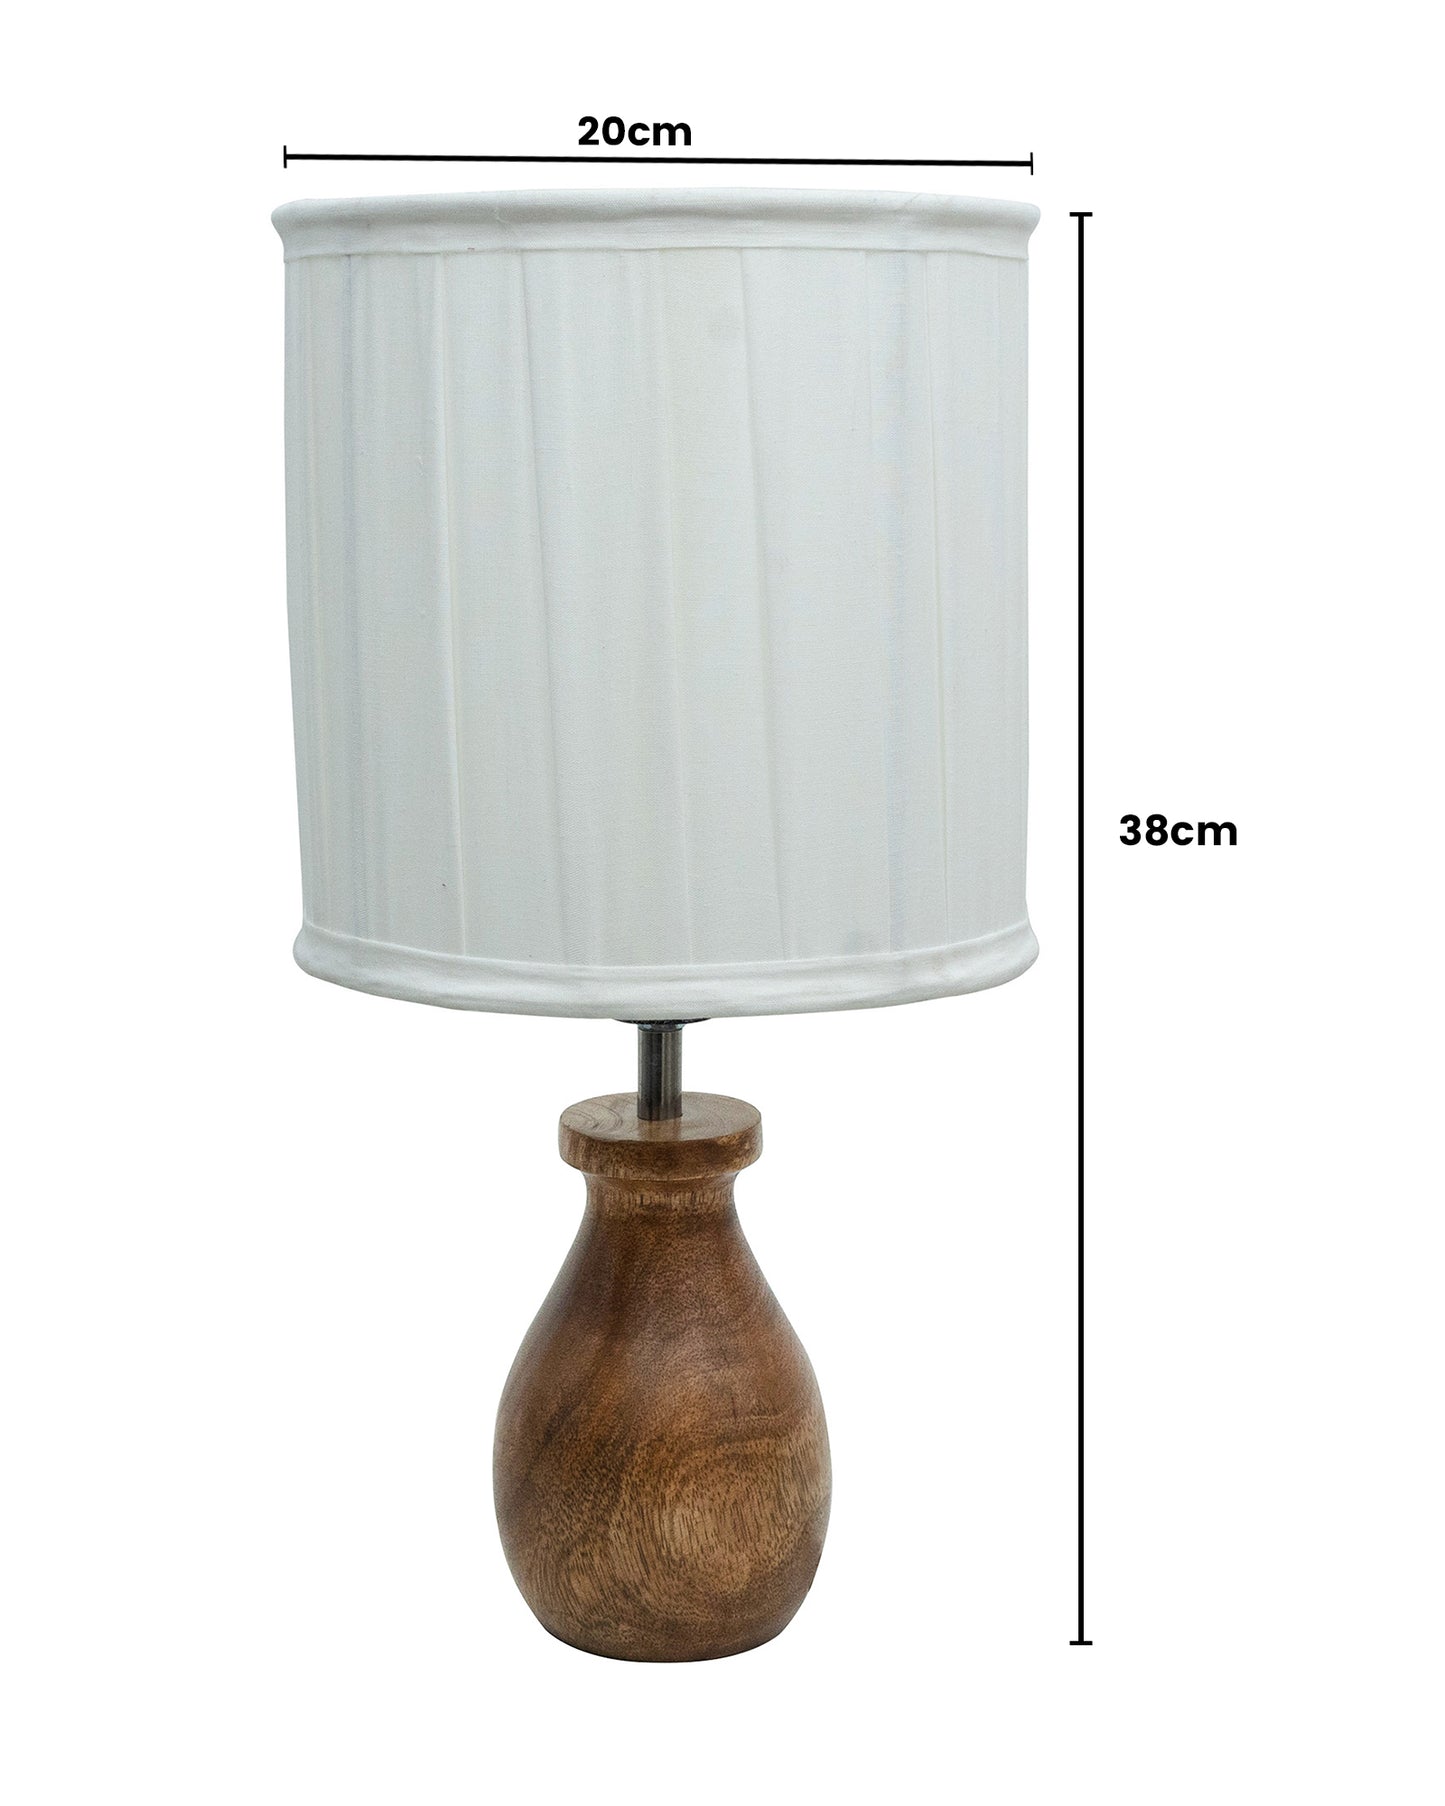 Dovel Pot Modern Table Lamp, Wooden Base Modern Fabric Lampshade for Home Office Cafe Restaurant, Dovel Pot